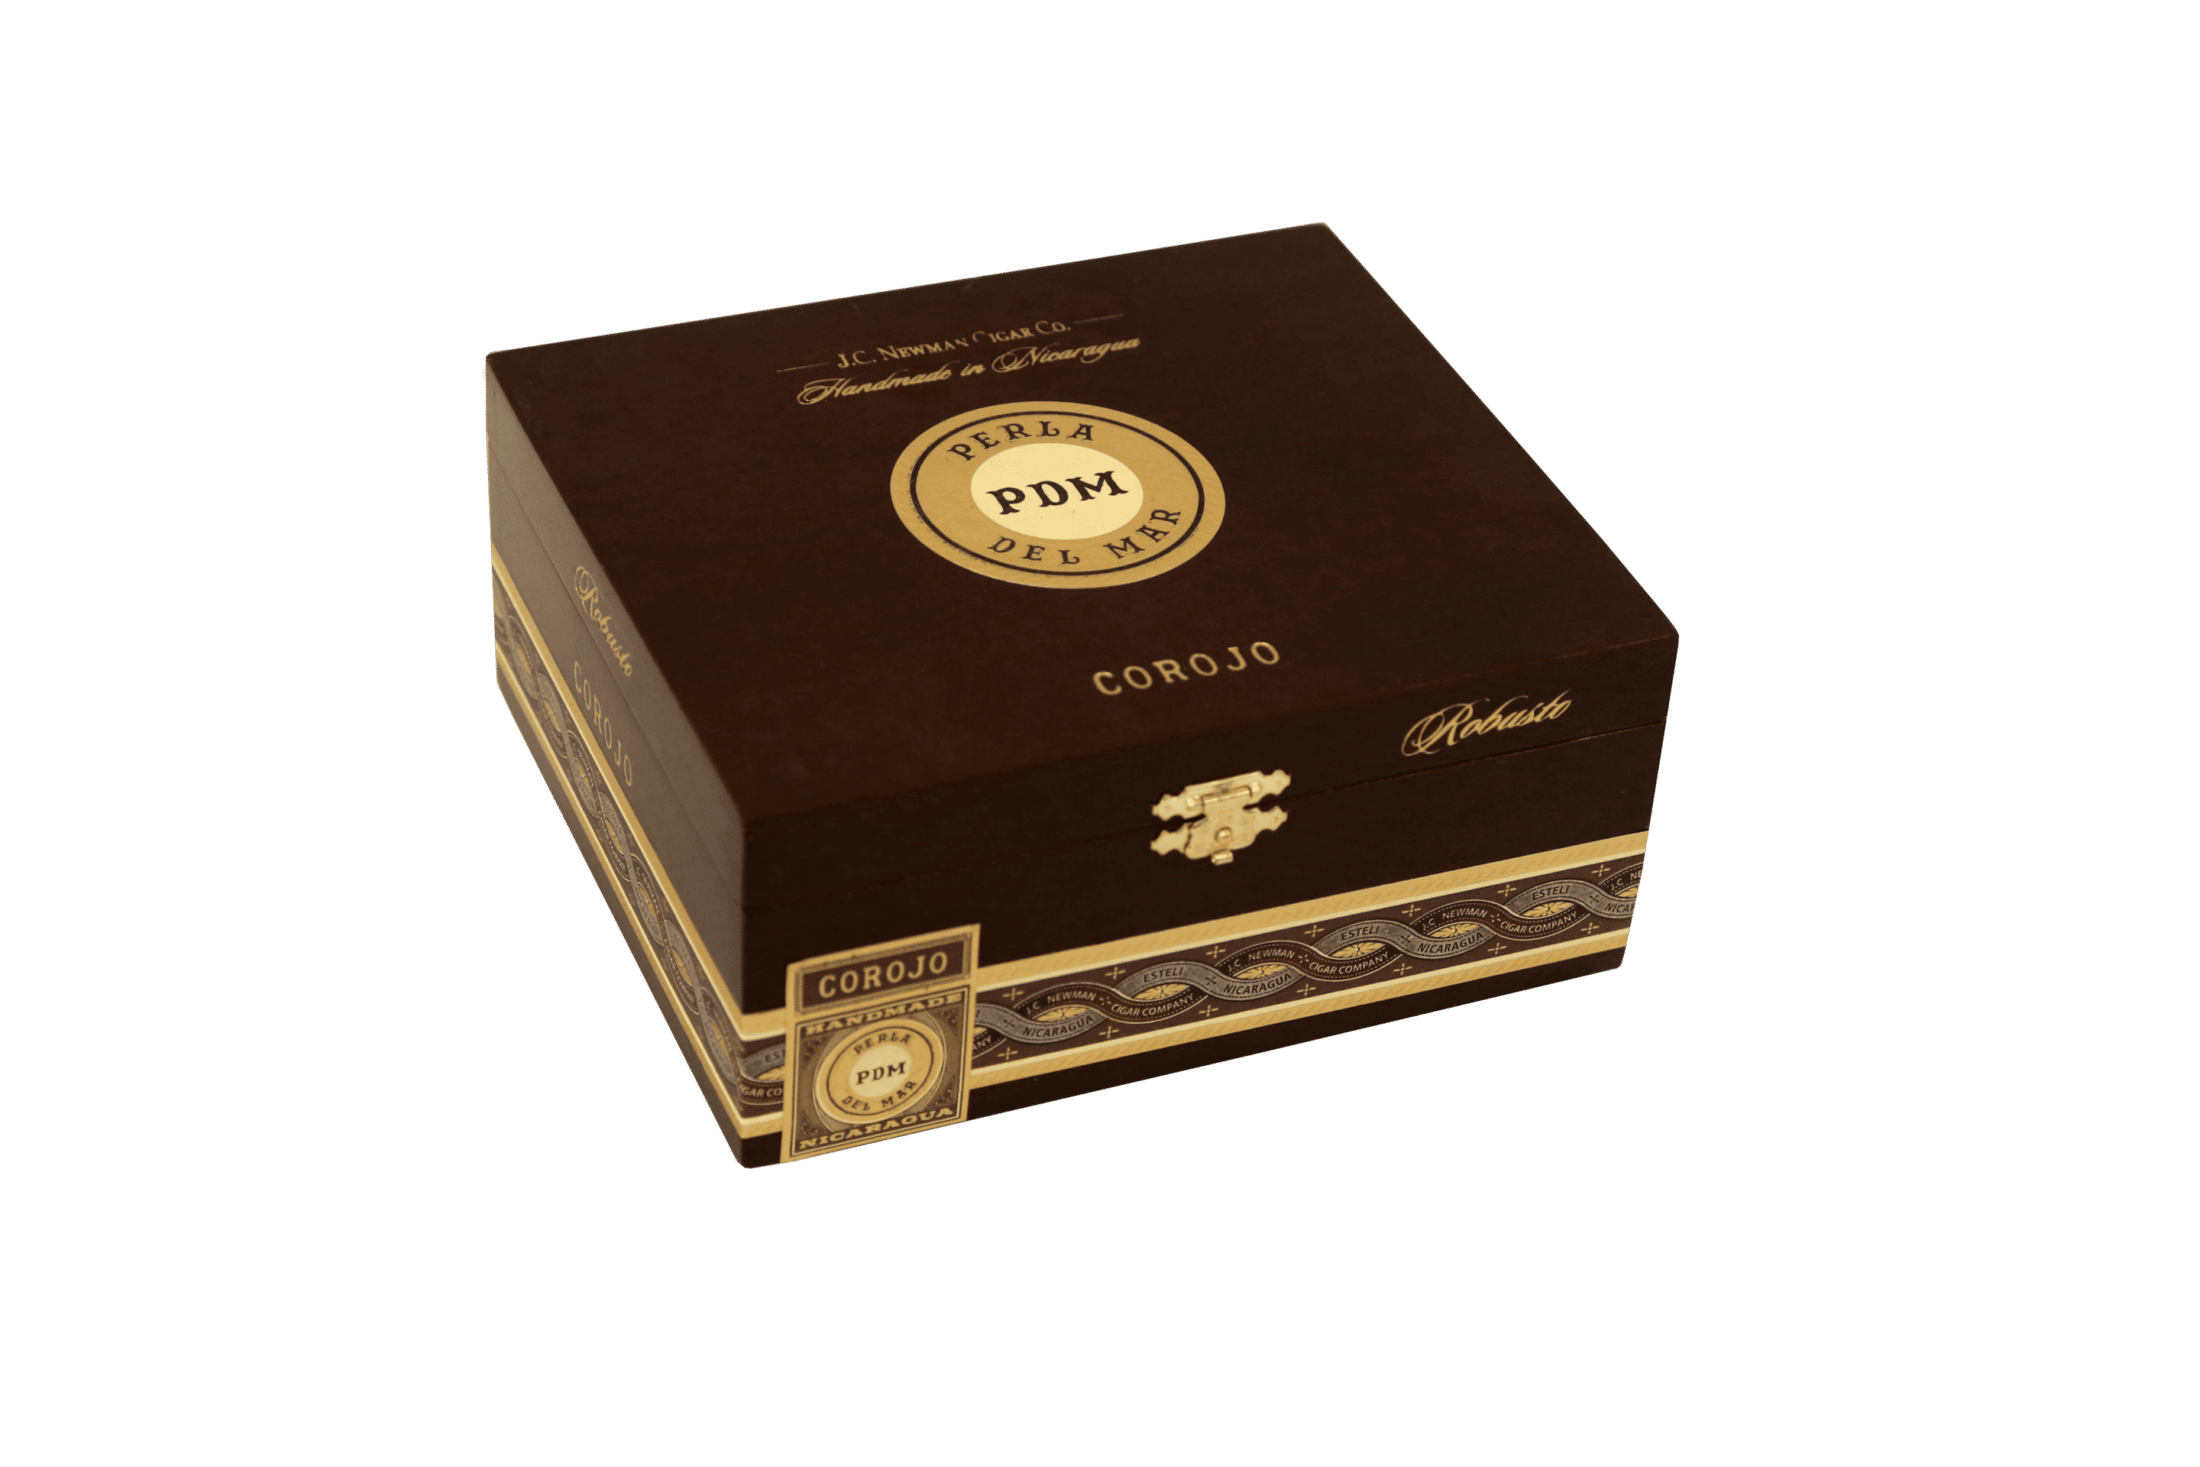 Closed box of 25 count Perla Del Mar Corojo Robusto cigars